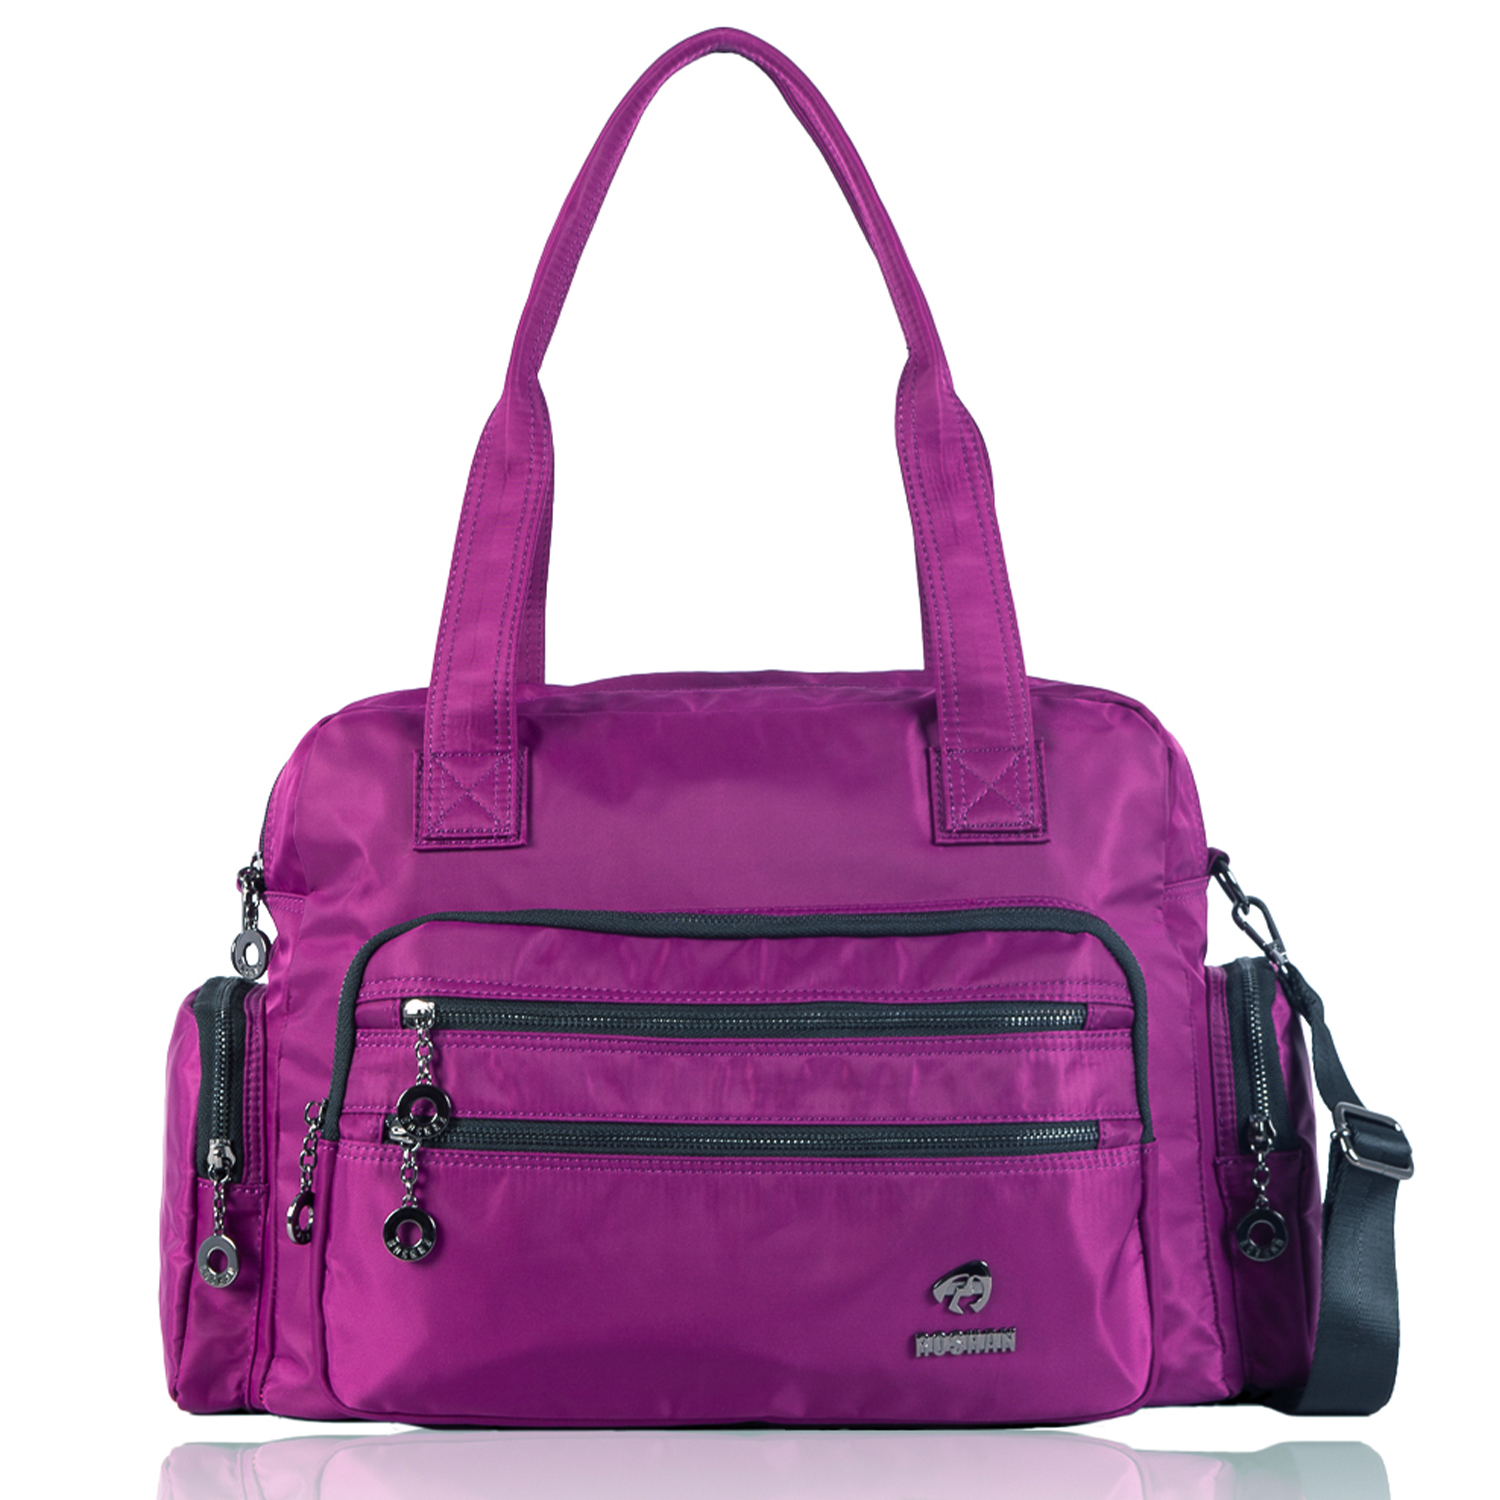 Handbags for Women - Buy Handbags Online - Roshan Bags